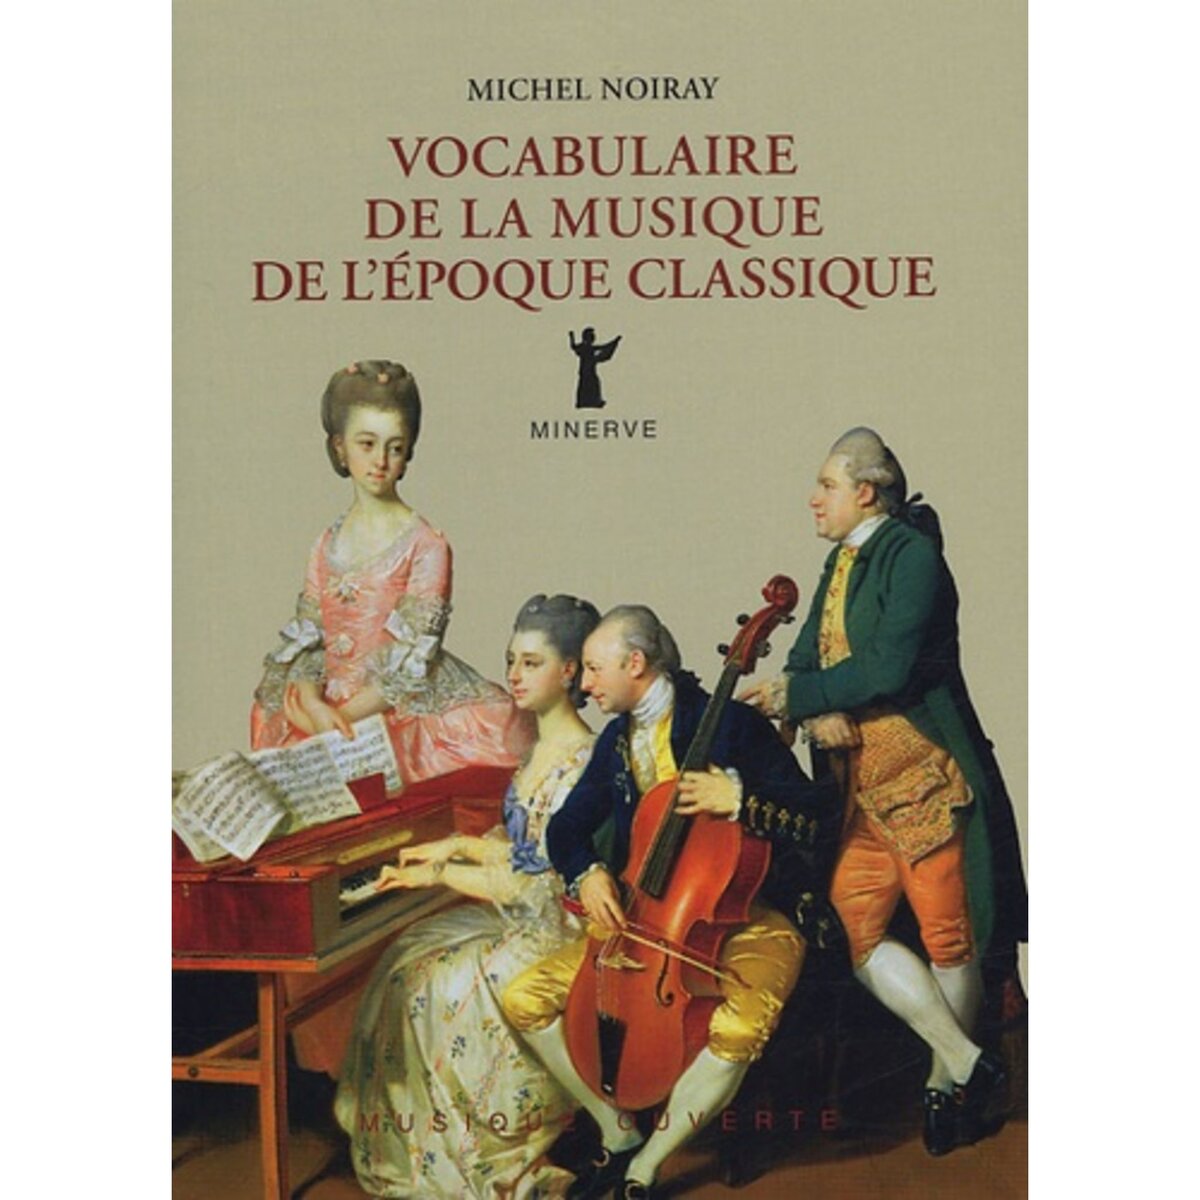  VOCABULAIRE DE LA MUSIQUE DE L'EPOQUE CLASSIQUE, Noiray Michel